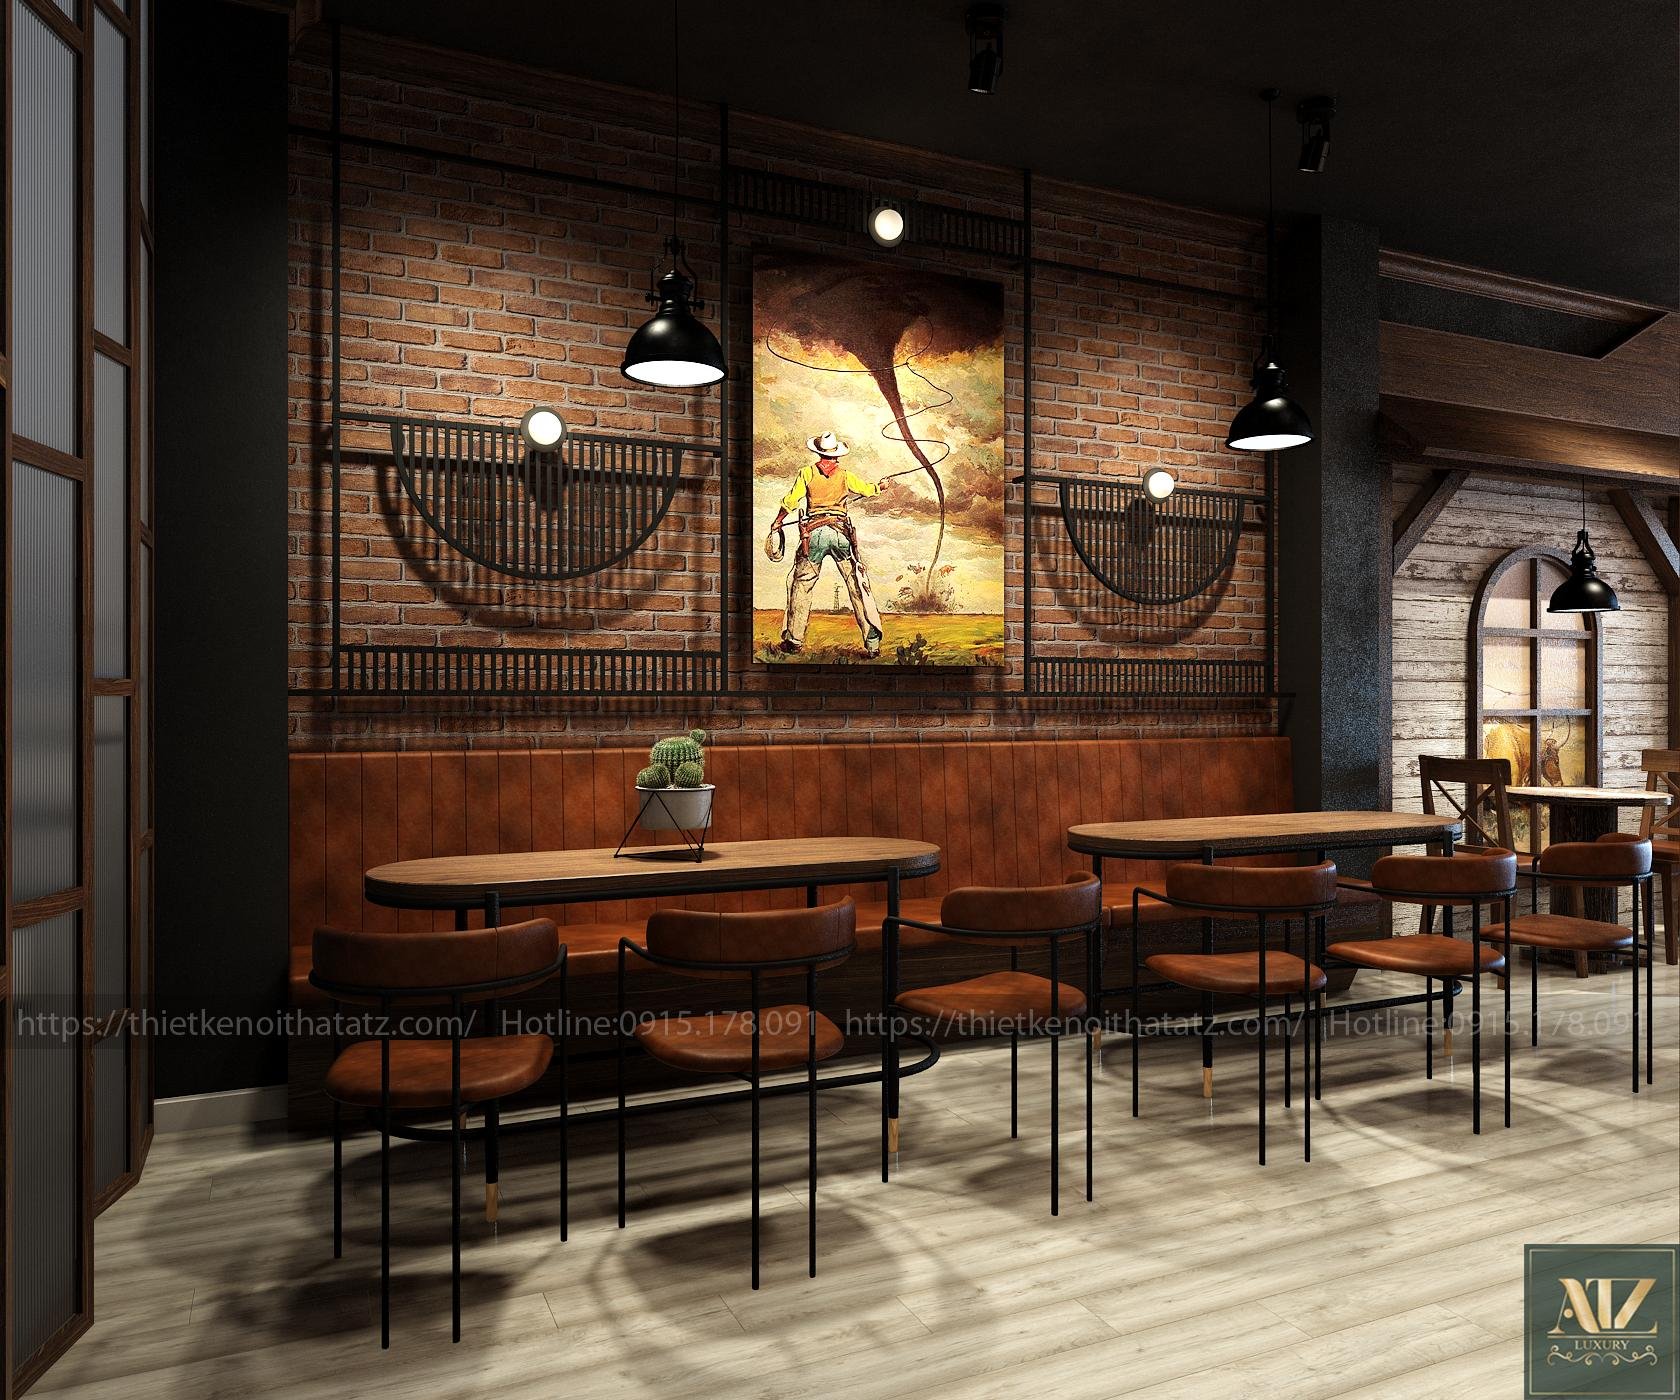 Hải Phòng đang trở thành trung tâm của ngành cà phê Việt, với các quán cafe độc đáo thu hút khách hàng. Thiết kế nội thất quán cafe tại Hải Phòng sẽ giúp bạn tạo ra một không gian độc đáo, mang đậm phong cách của thành phố biển sôi động này. Hãy xem hình ảnh để cập nhật những xu hướng mới nhất.